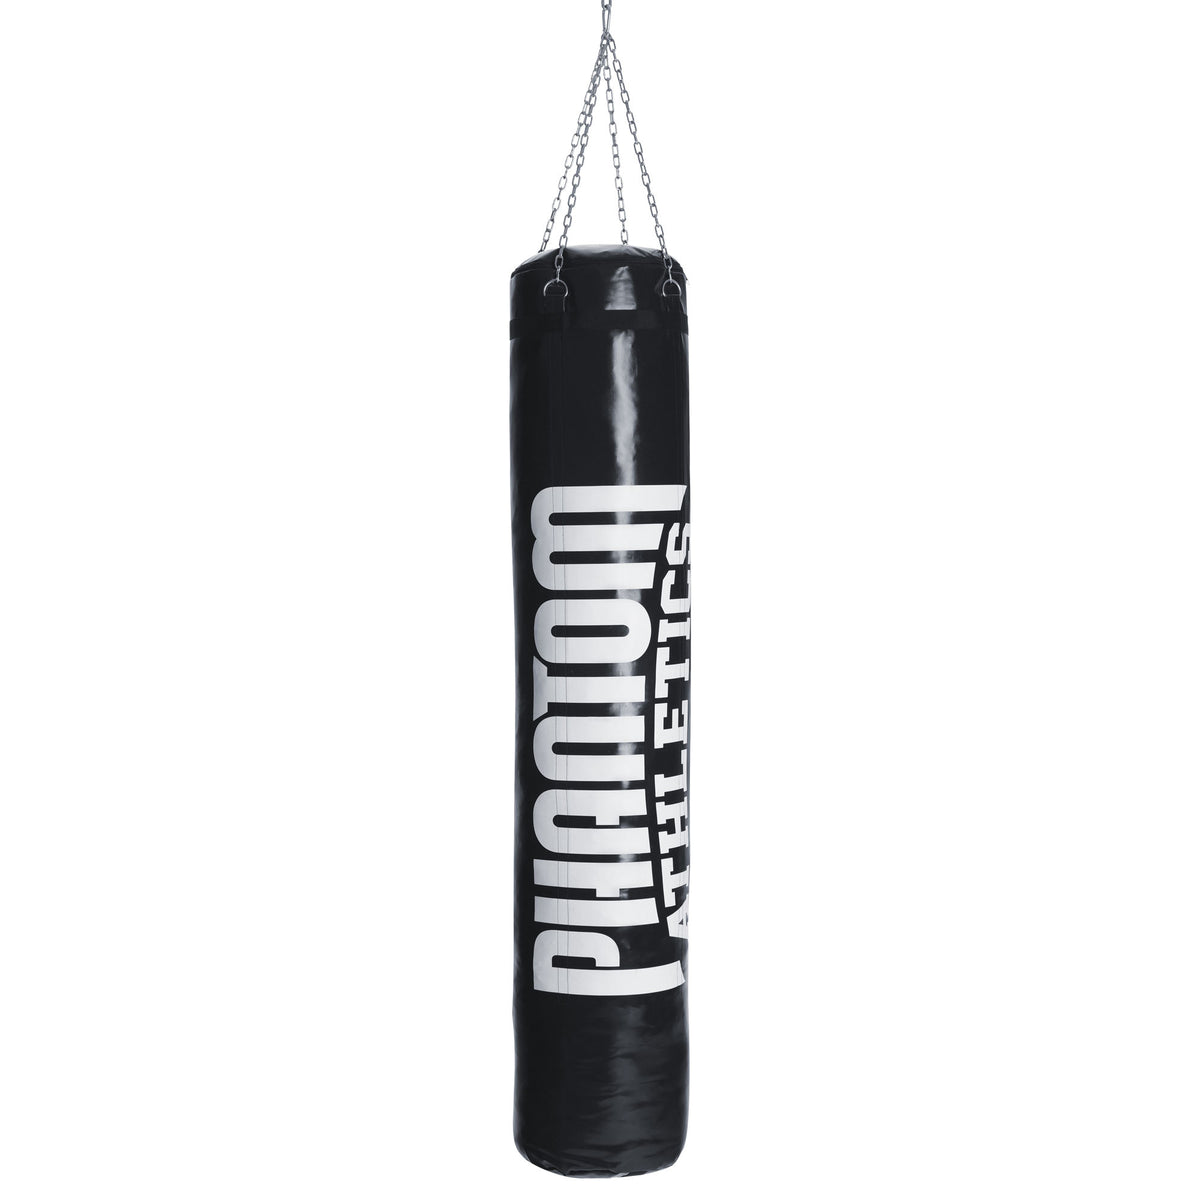 Phantom High Performance boksarska vreča za borilne veščine v dolžini 180 cm